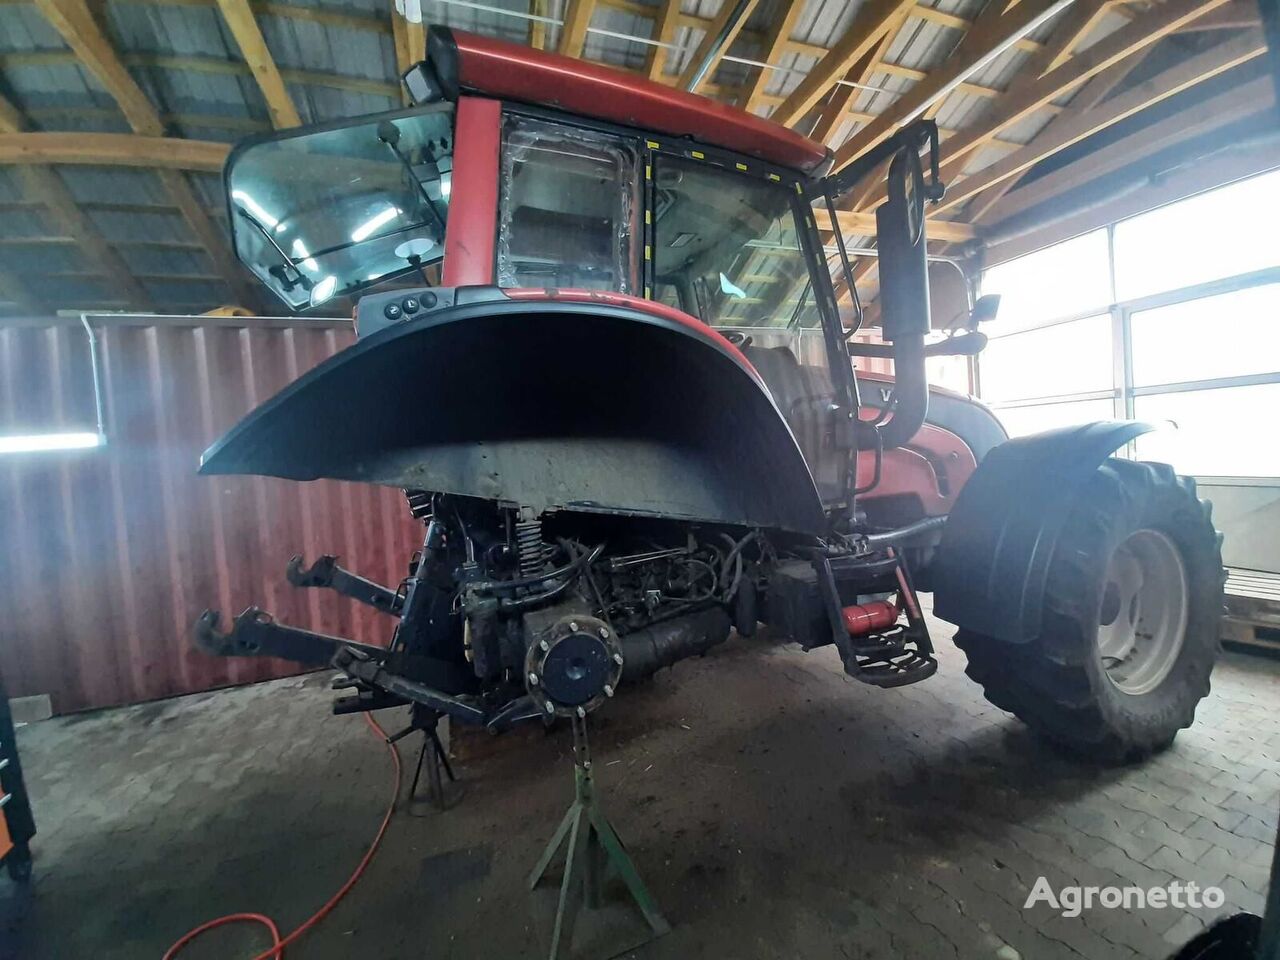 Reparaciones y revisiones de tractores VALTRA, remolques PALMS, maquinaria agrícola